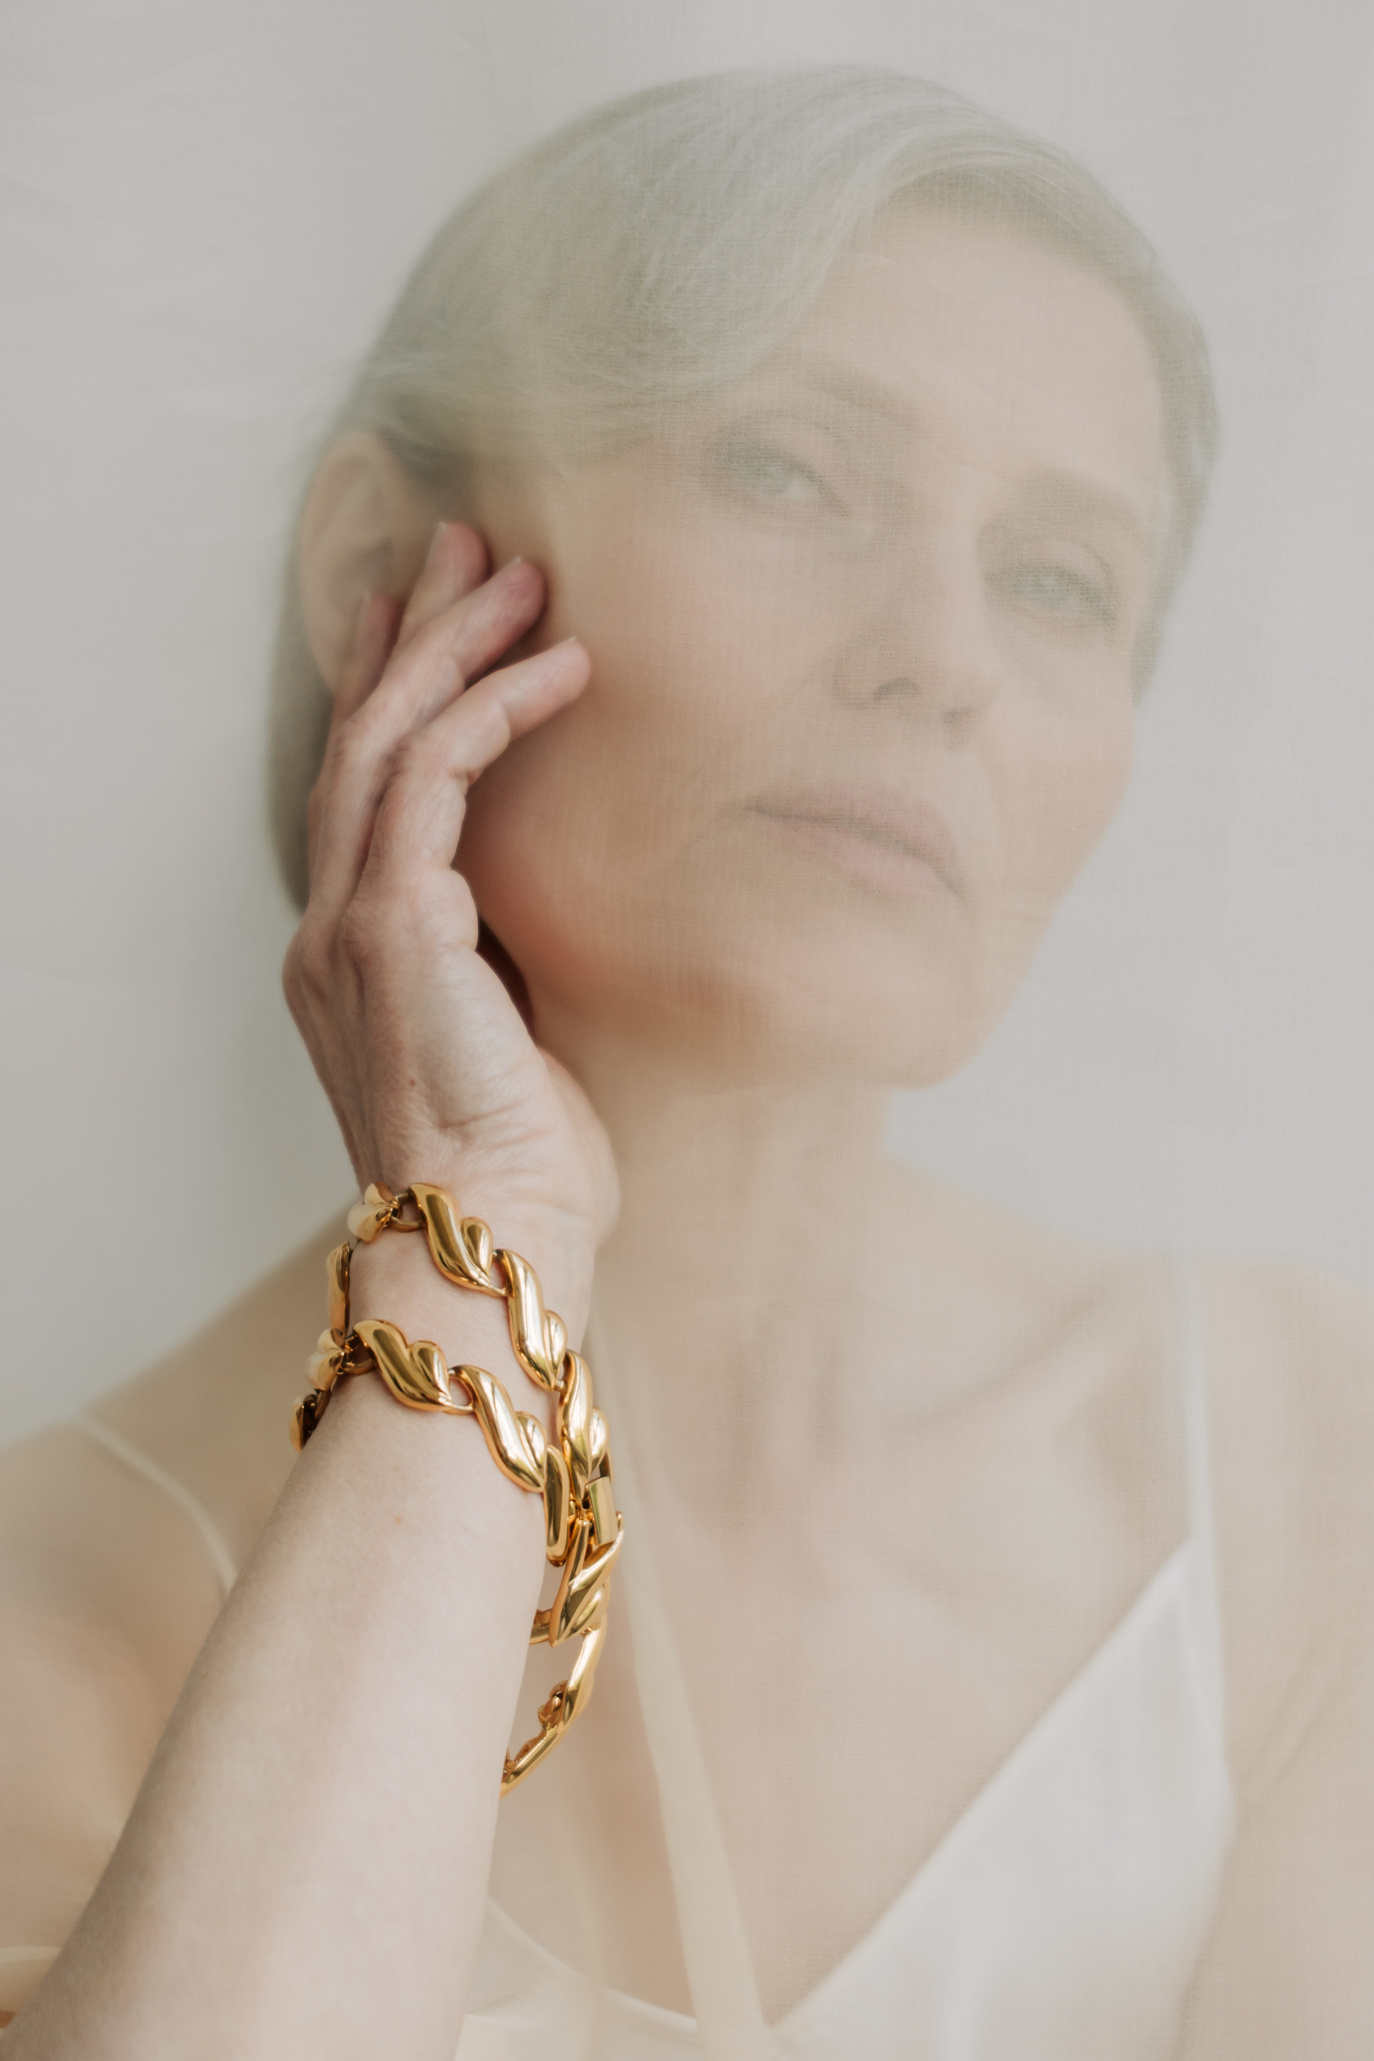 Senior Woman Wearing Gold Bracelet